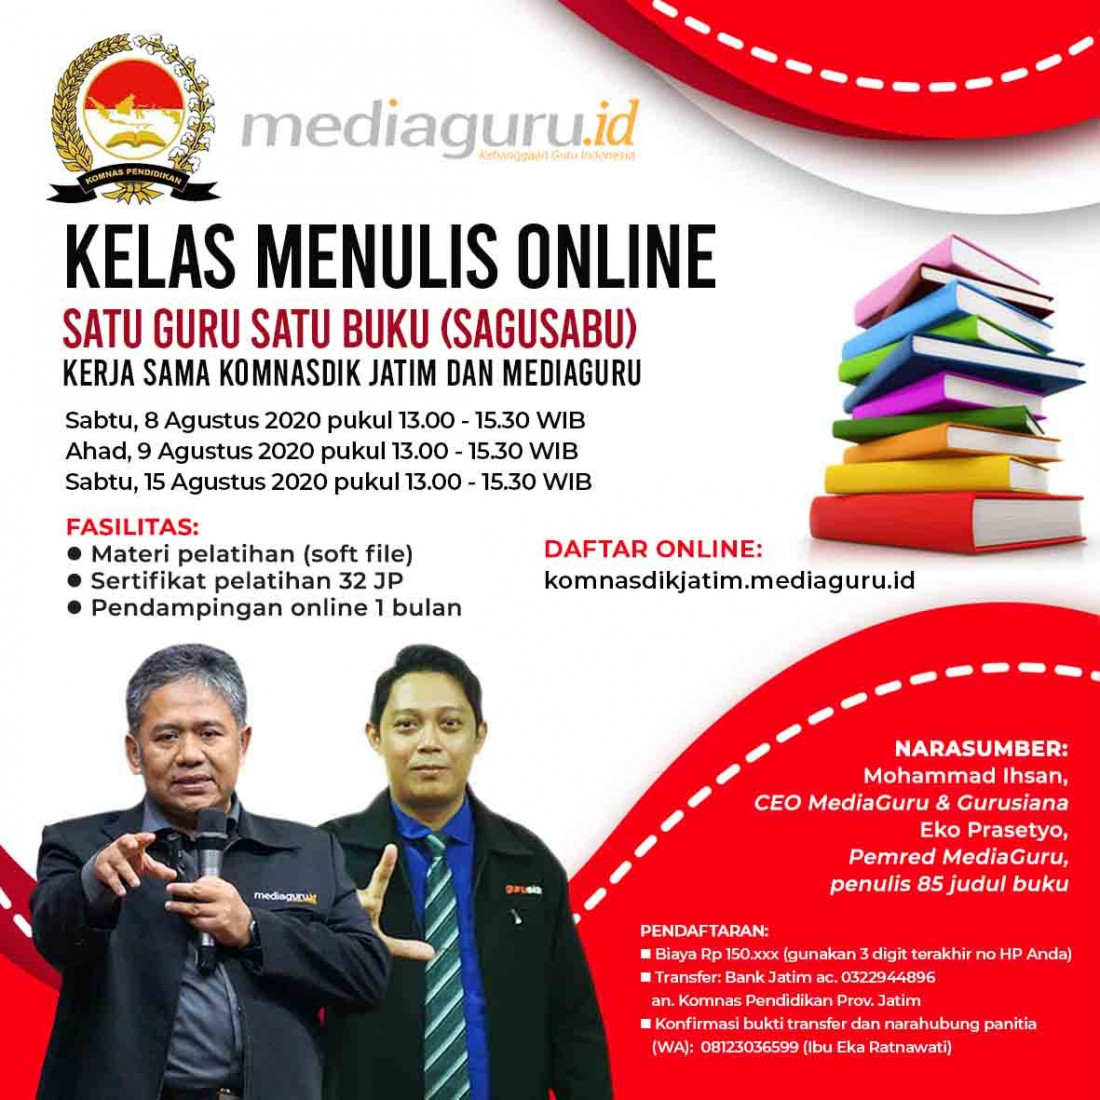 Kelas Menulis Online Satu Guru Satu Buku (Sagusabu) Komnas Pendidikan Jatim (8 - 15 Agustus 2020)